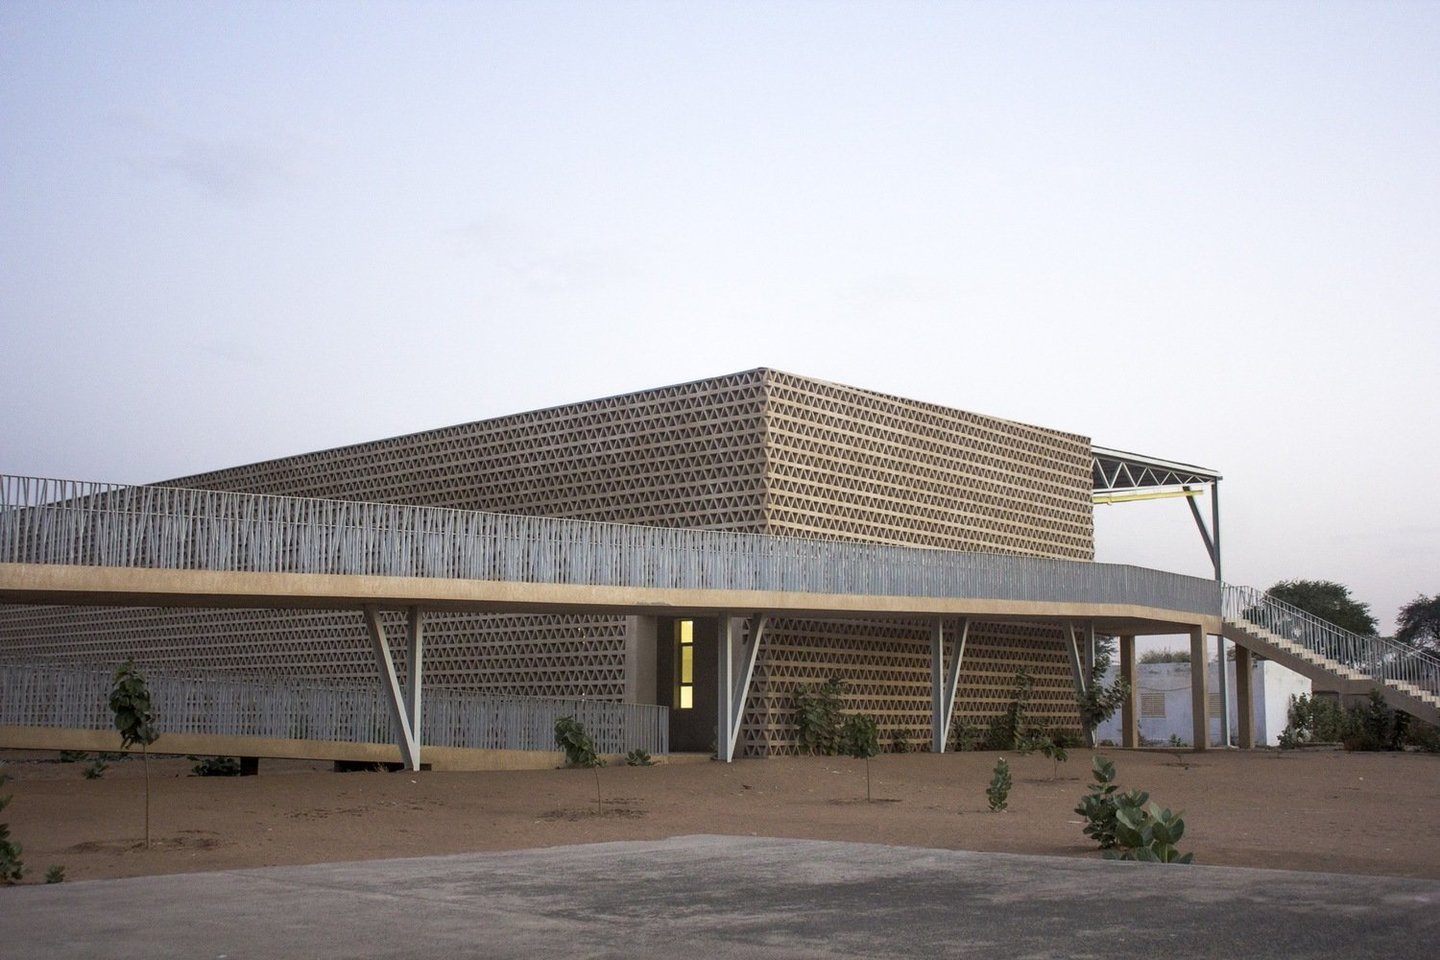 Apdovanotas Alioune Diop universiteto Mokymo ir tyrimų skyriaus pastatas Senegale.<br>Ch. Tall / archdaily.com nuotr.